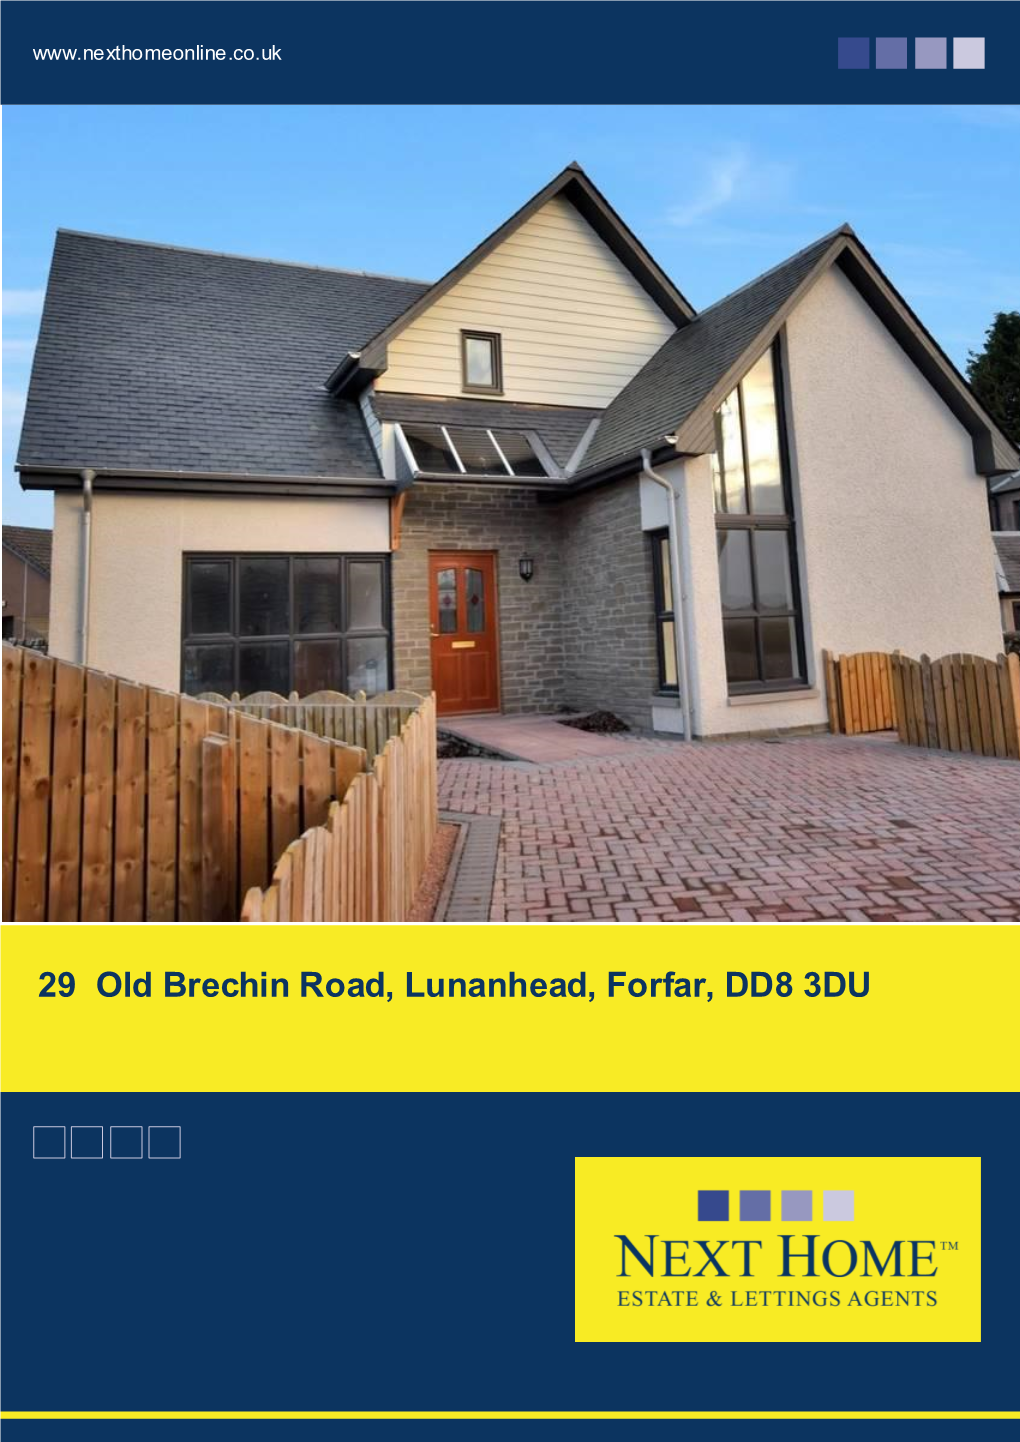 29 Old Brechin Road, Lunanhead, Forfar, DD8 3DU Offers Over £320,000